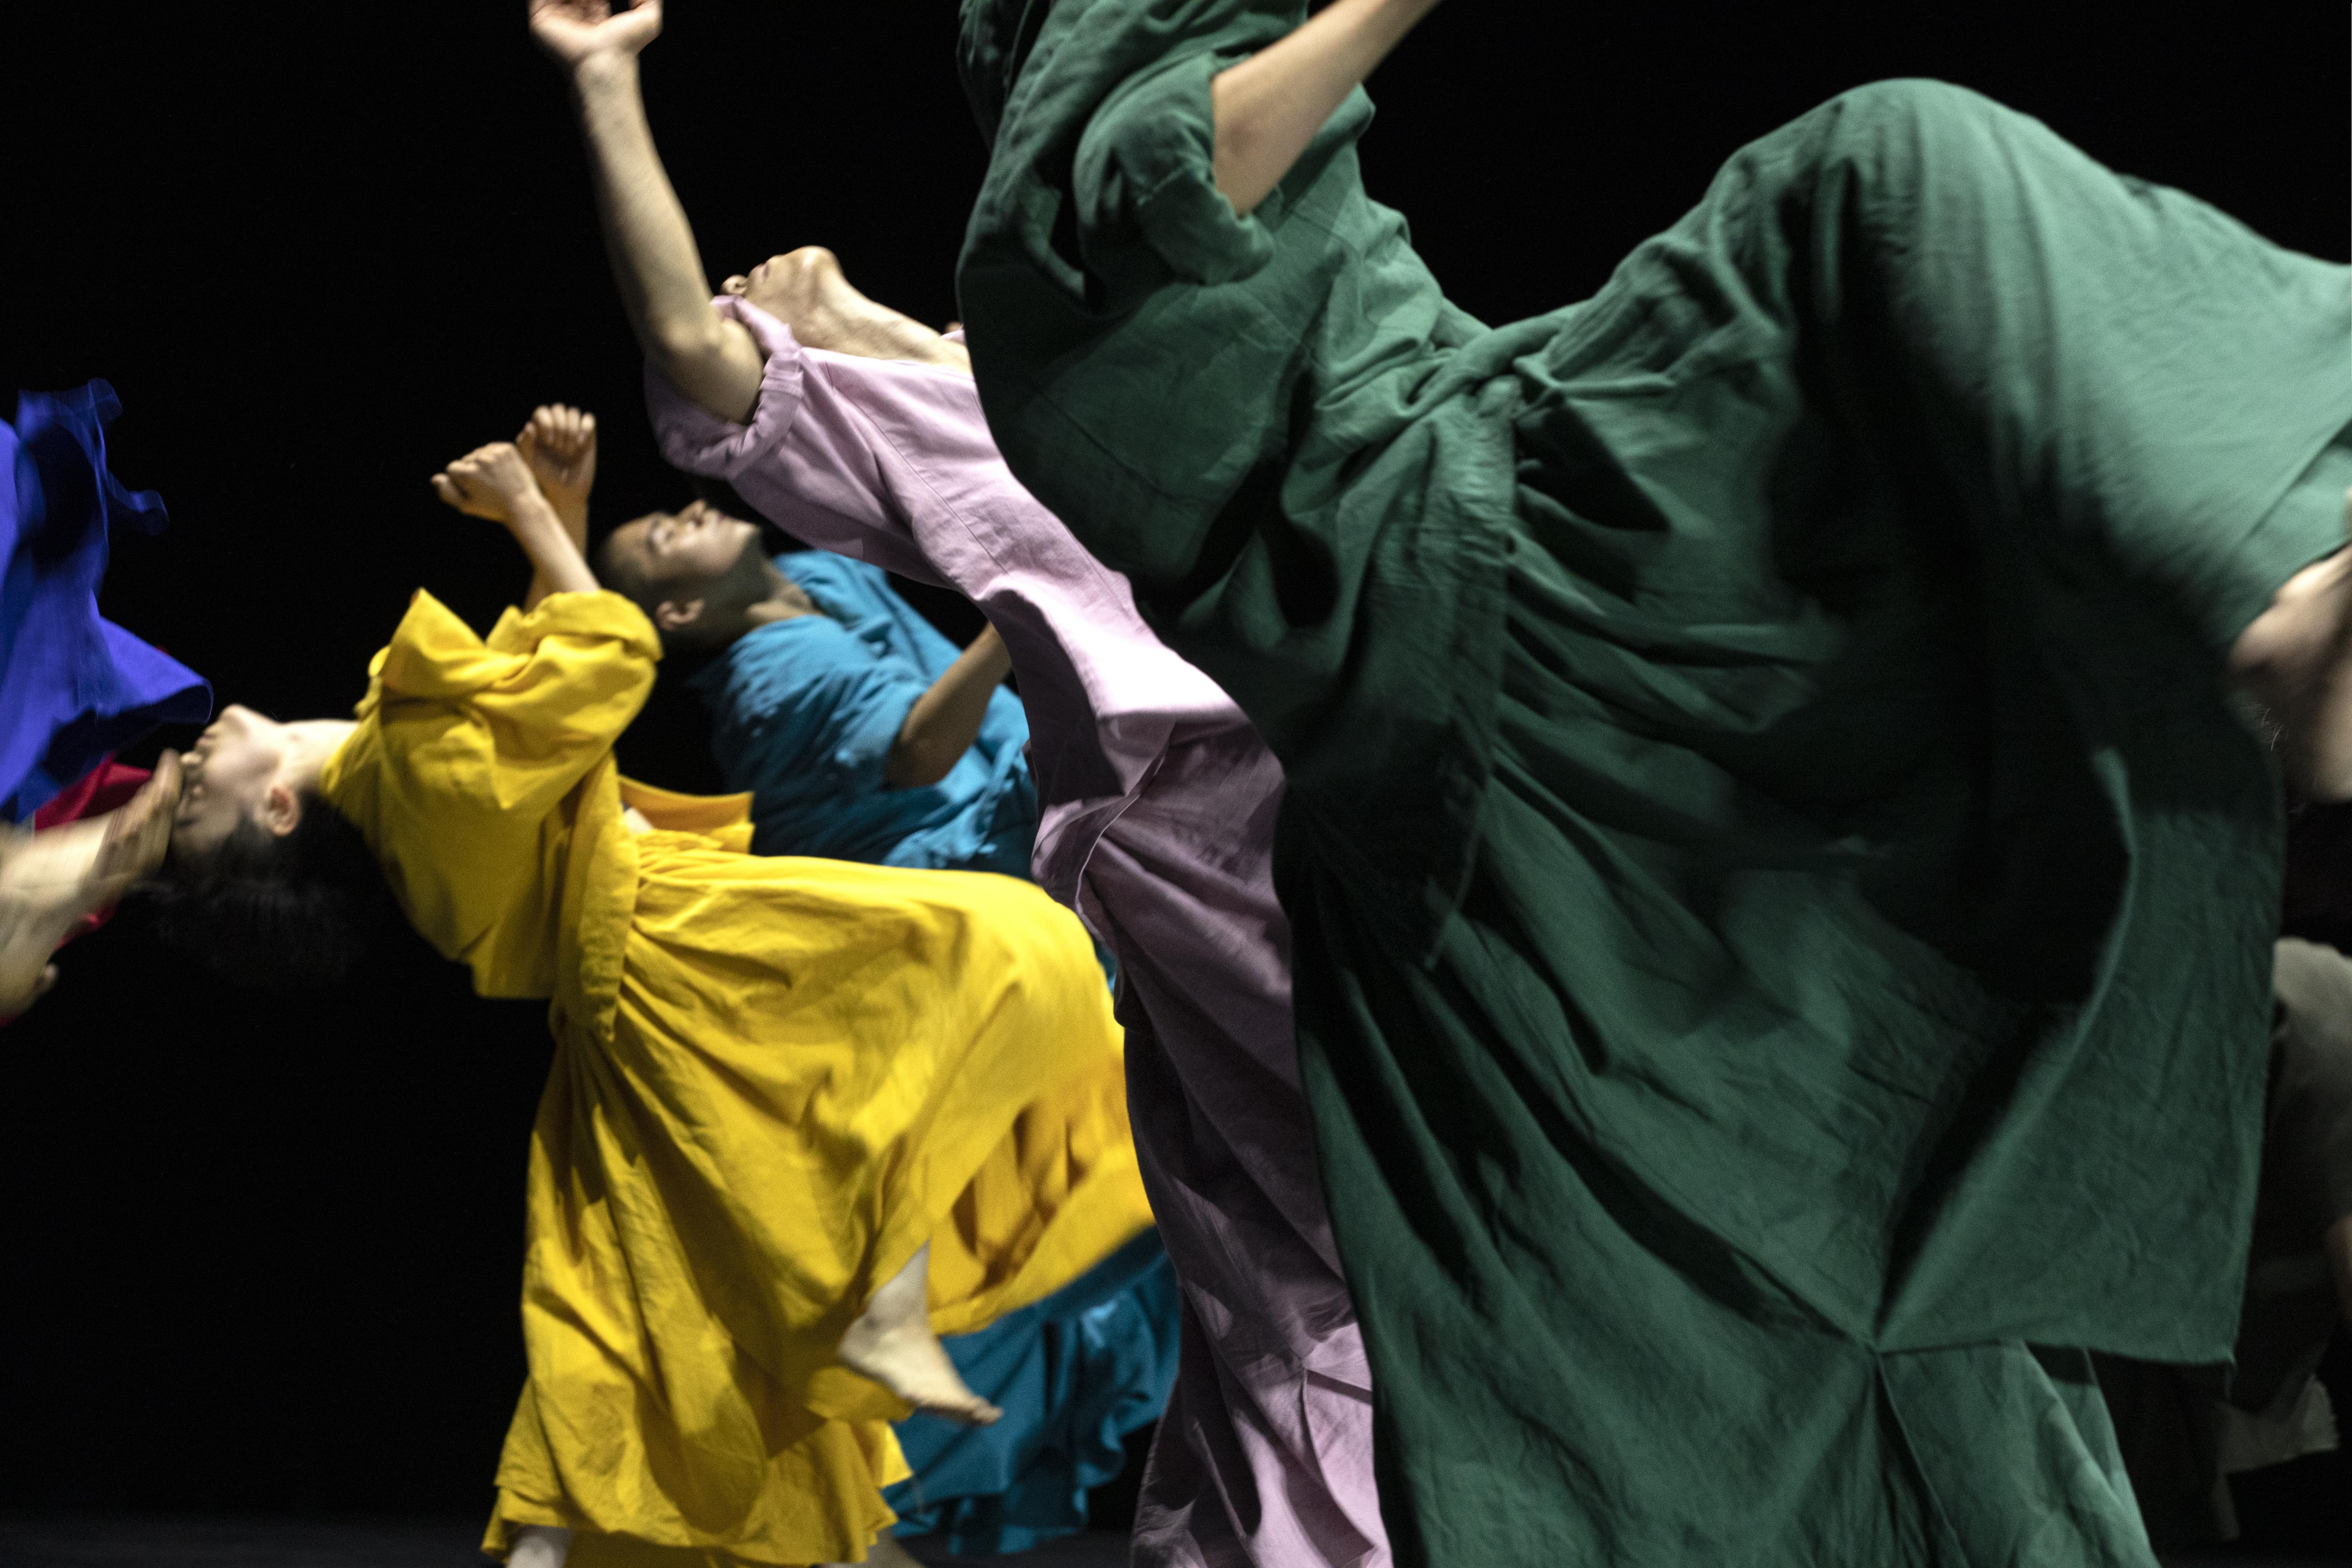 Danseurs portant de longues robes colorées, extrait de “14”